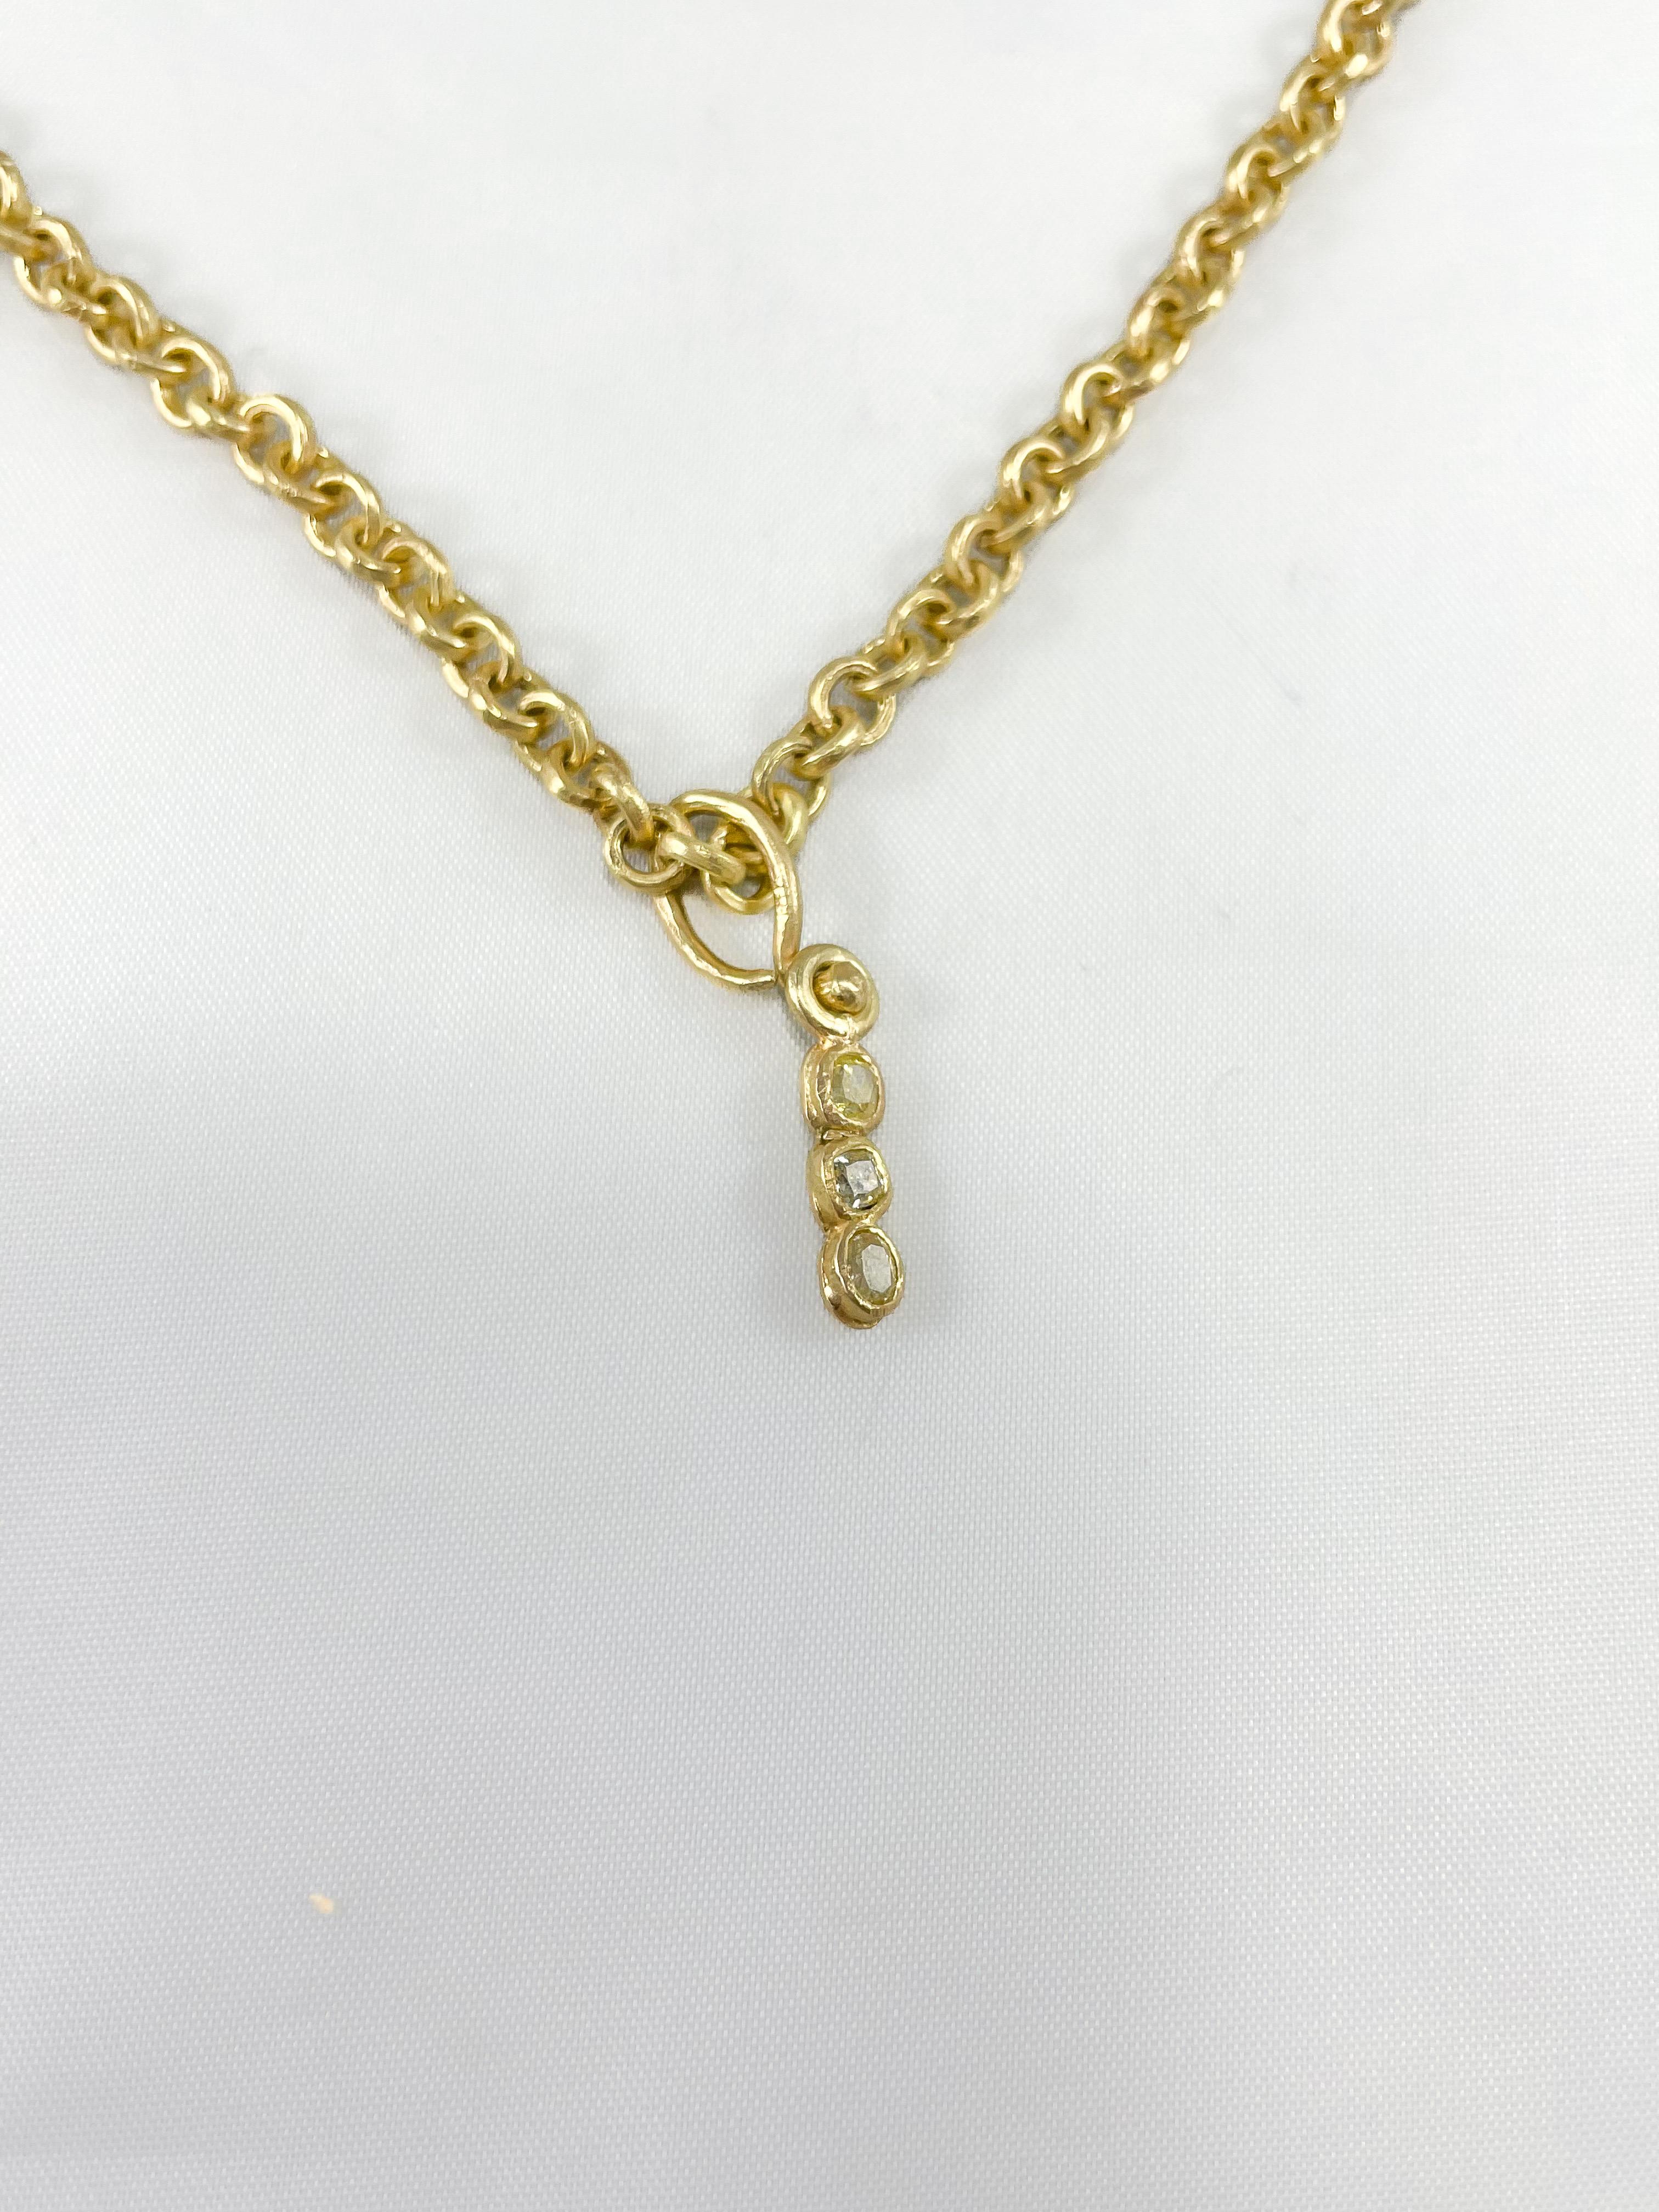 Un tour de cou en chaîne à maillons, fabriqué à la main en or 18 carats recyclé. Le collier est composé de maillons ronds de forme uniforme. D'une longueur de 18